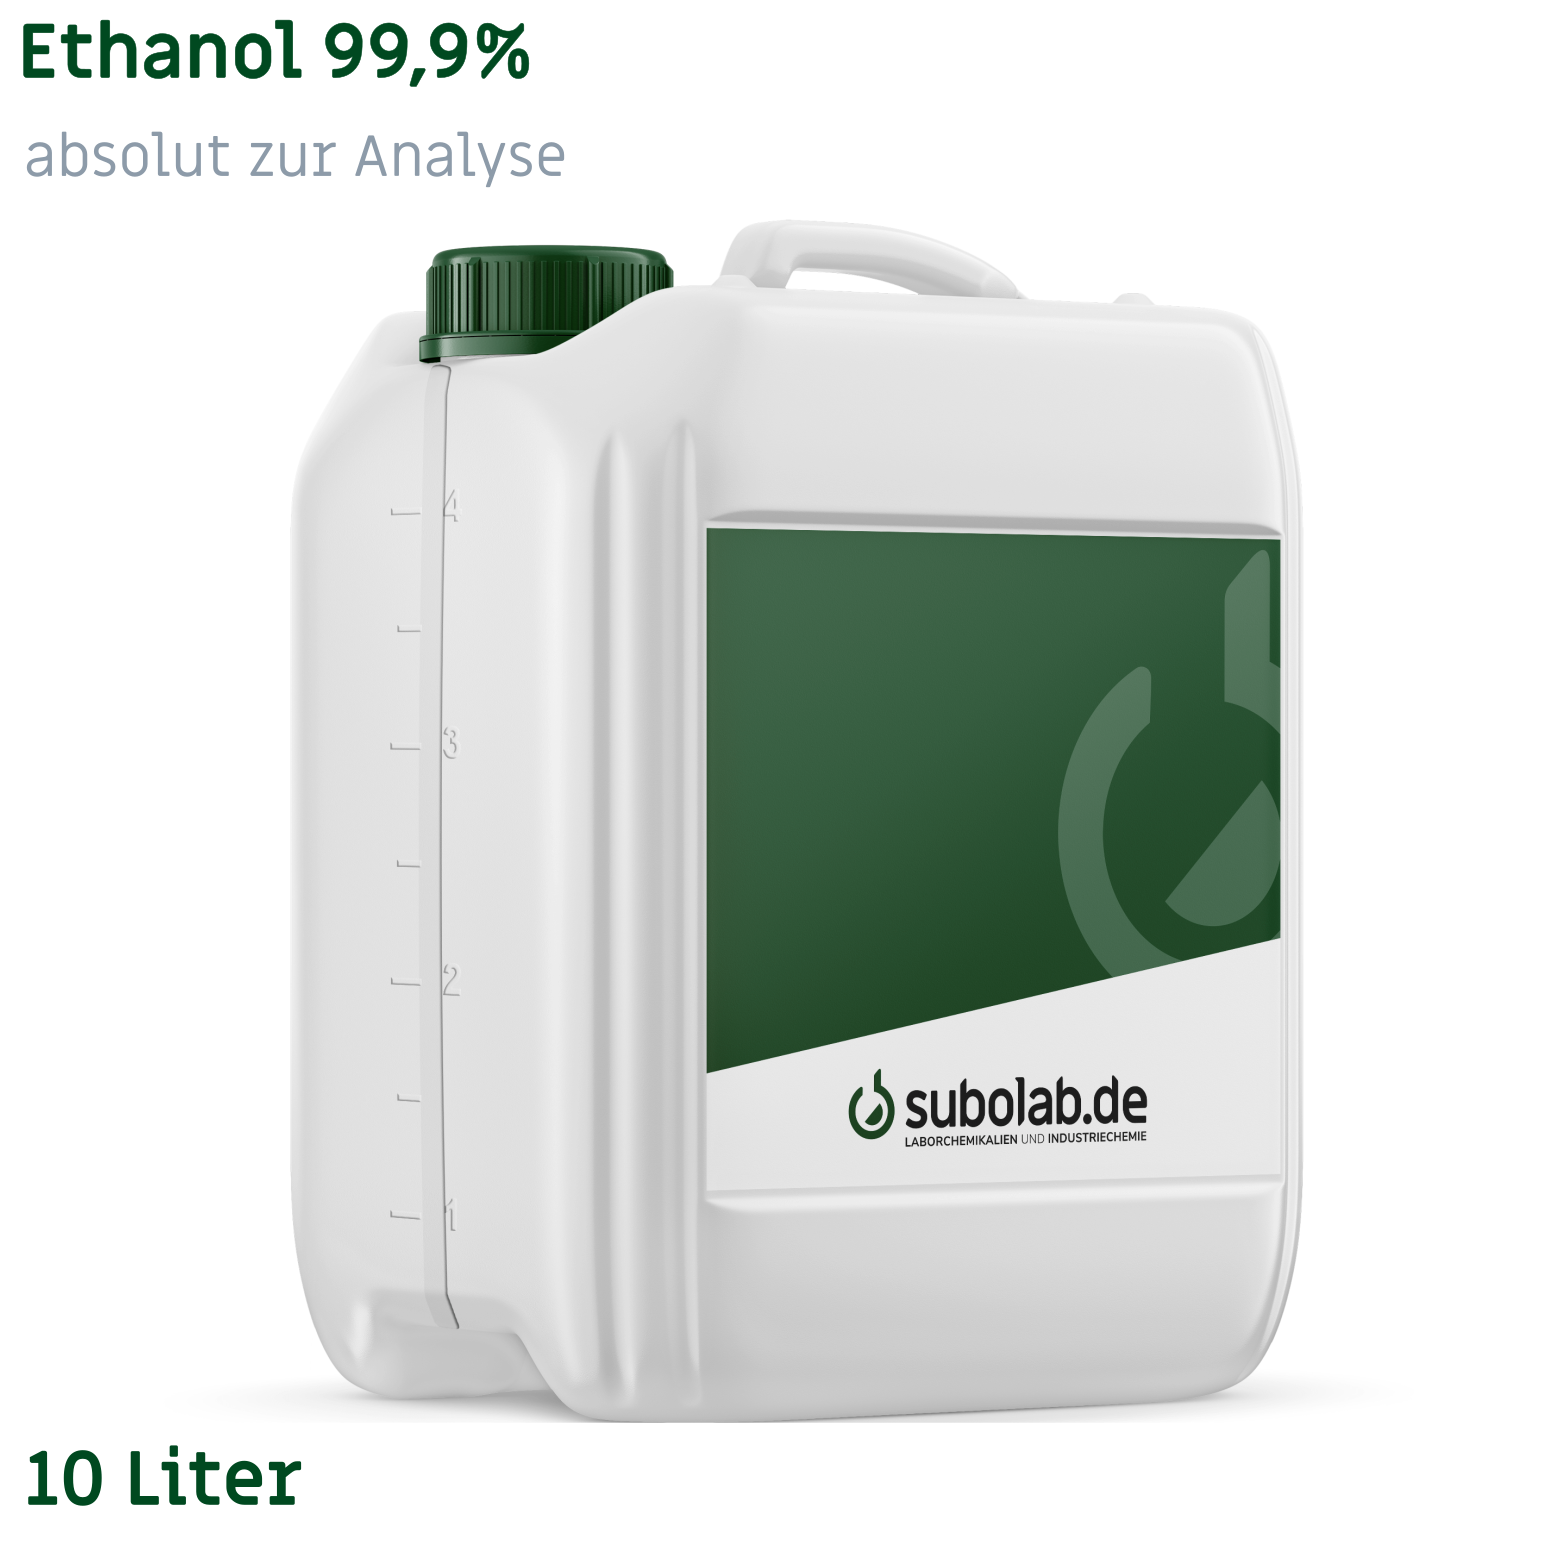 Bild von Ethanol 99,9% absolut zur Analyse (10 Liter)